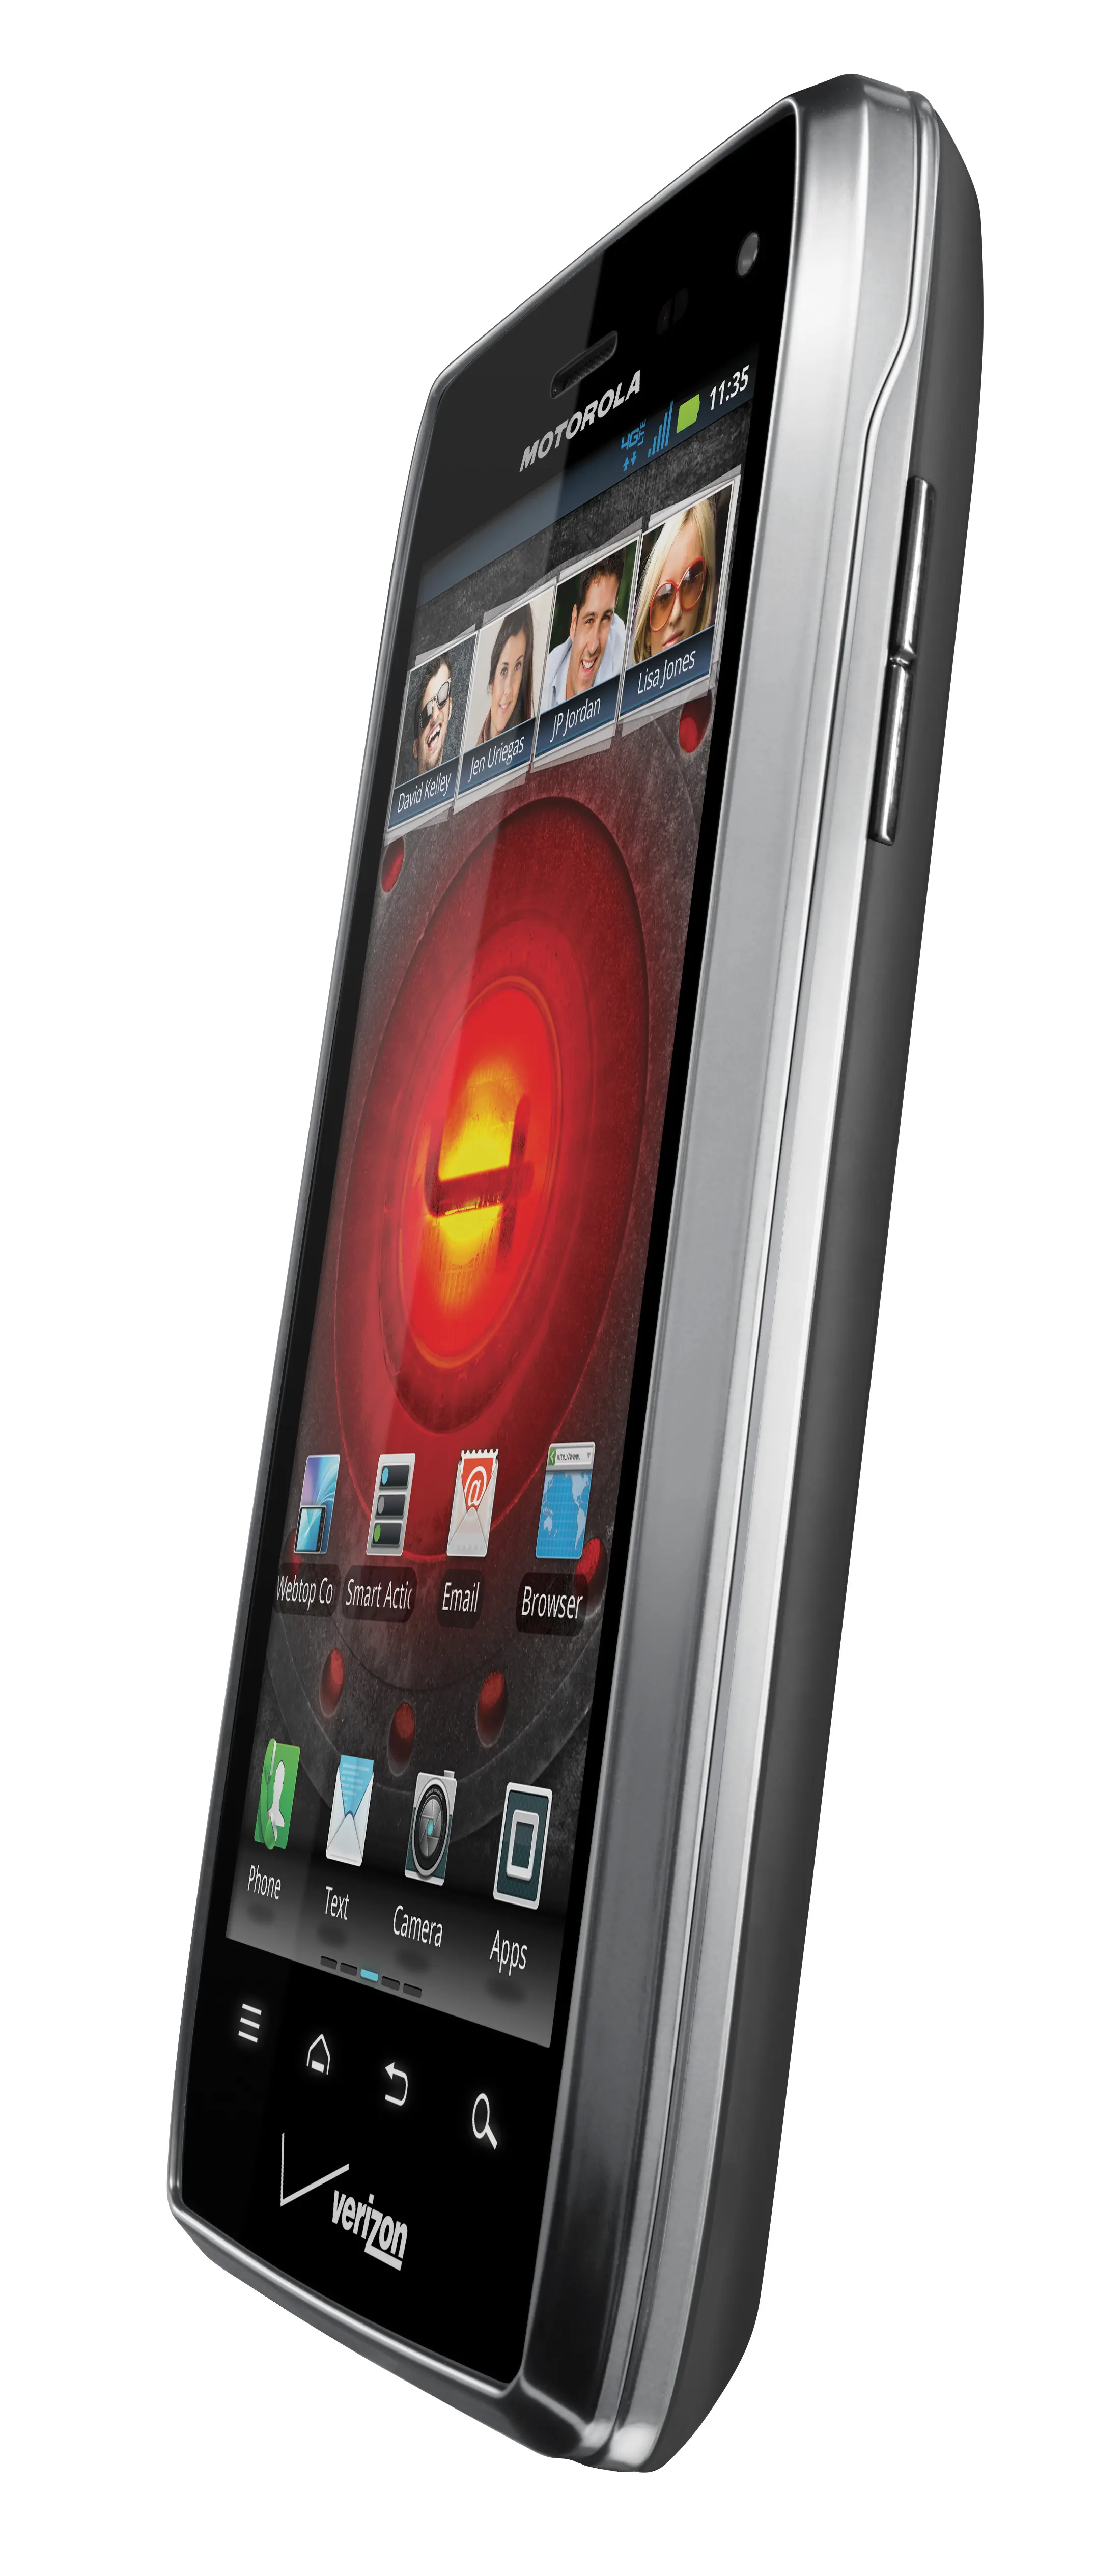 Motorola Droid 4 con Verizon es presentado en el #CES2012